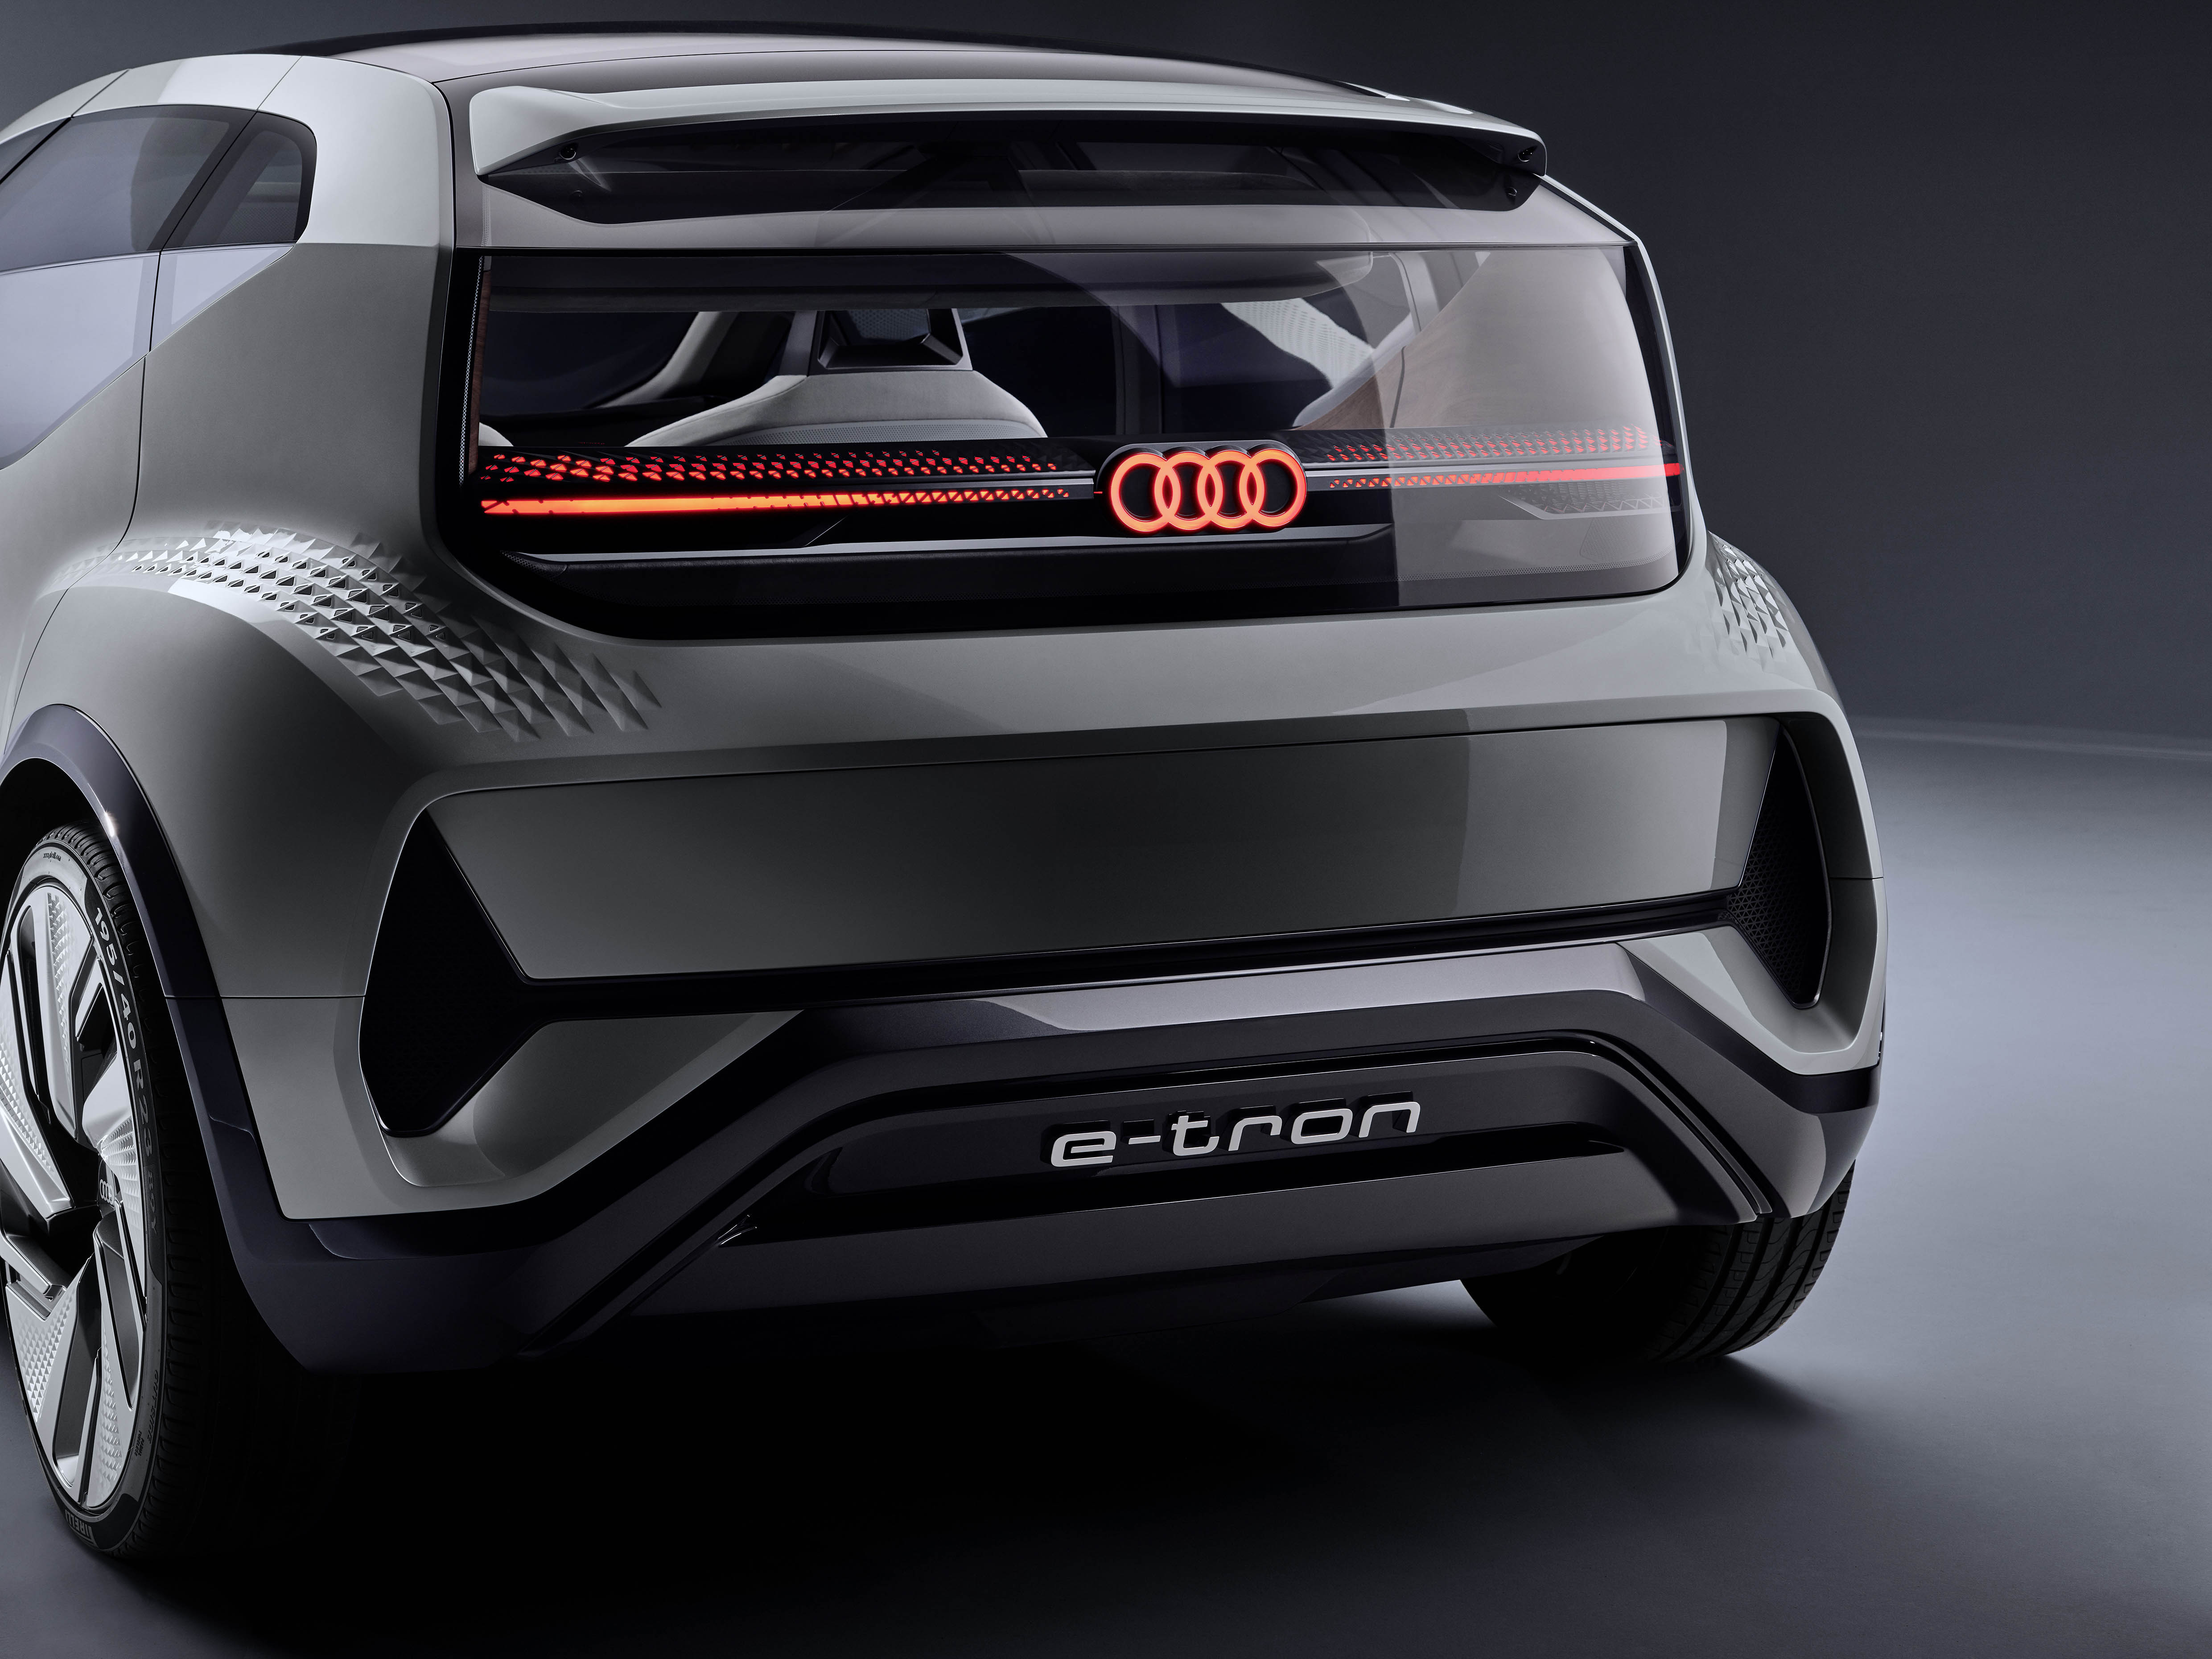 Audi concept. Ауди концепт кар 2020. Электрокар от Ауди концепт. Концепт Audi 2019. Audi электрокар новый.